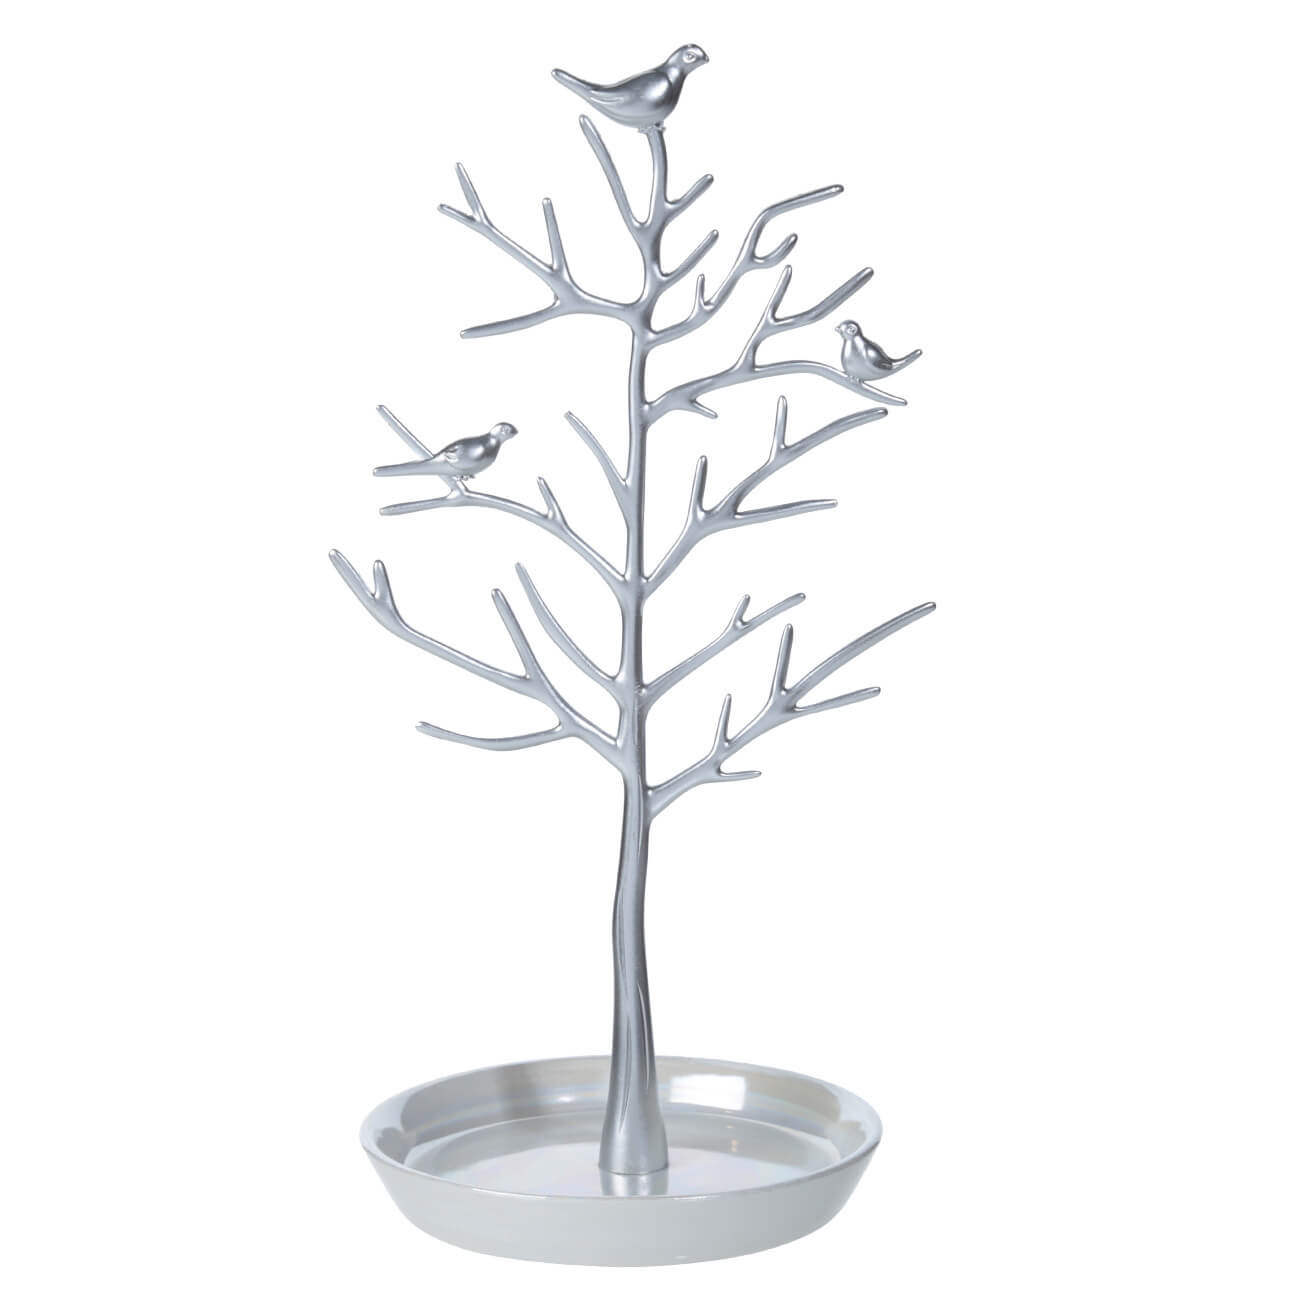 Держатель для украшений, 30 см, металл, серебристый, Дерево с птицами, Magic tree пароварка centek ct 1459 серебристый